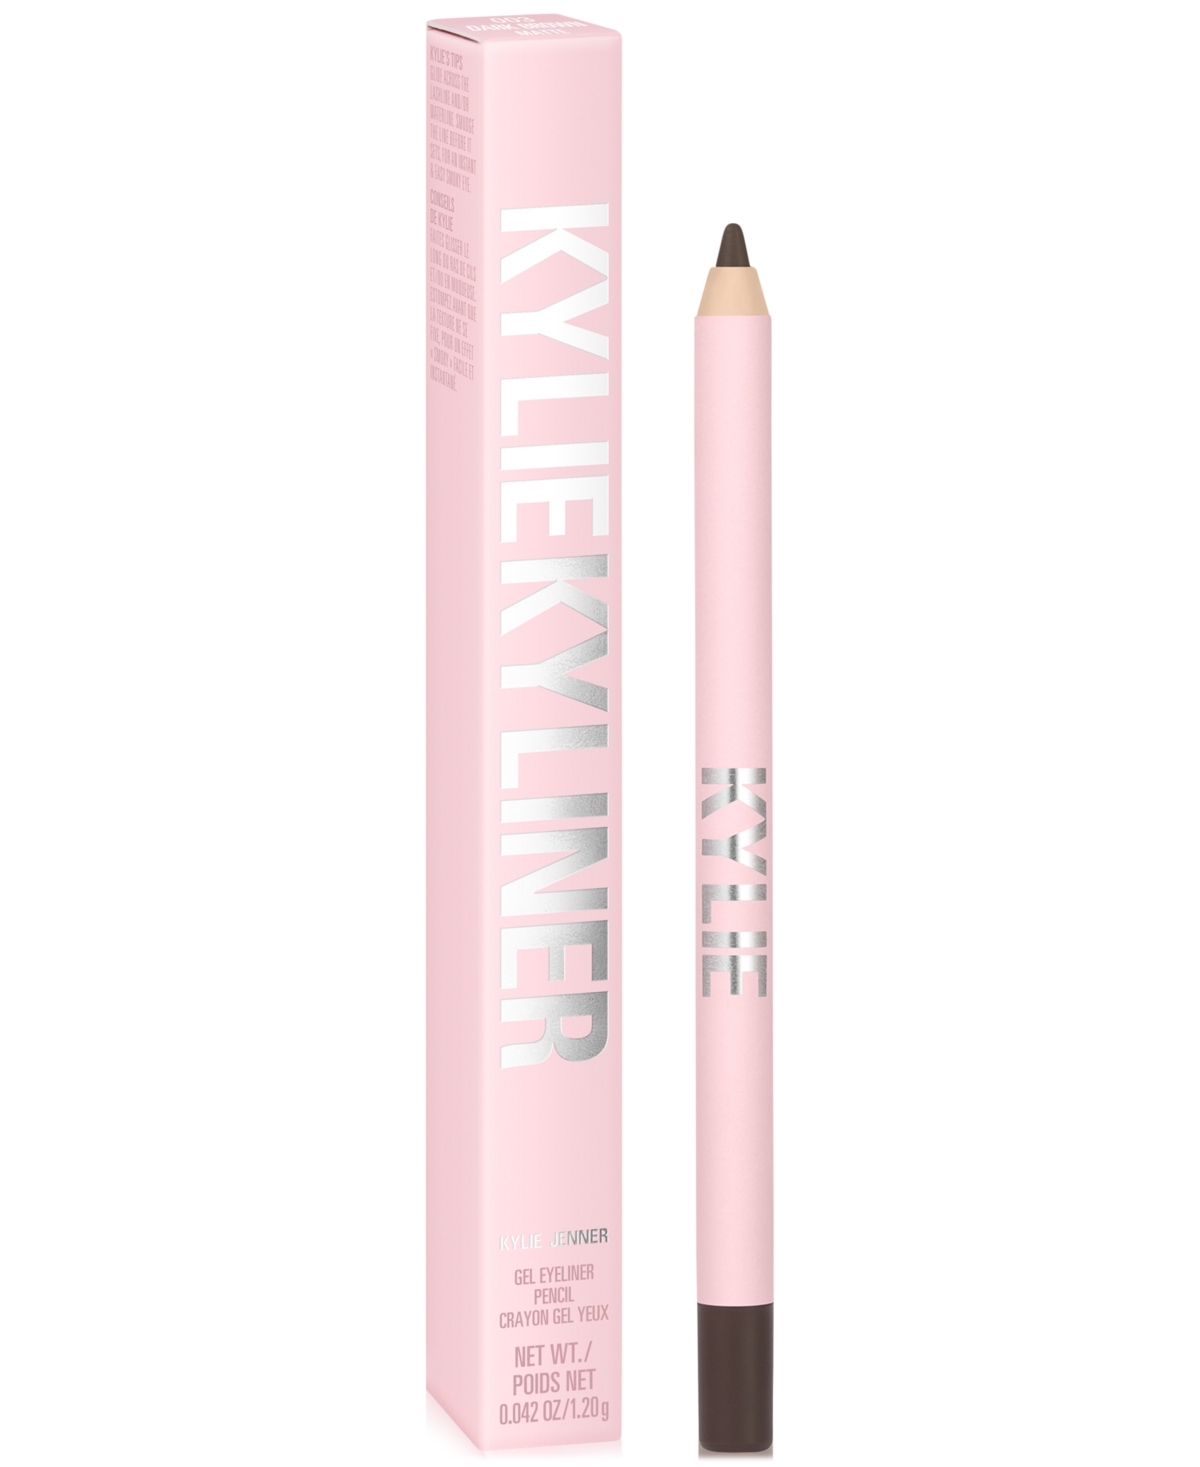 Kylie Cosmetics Kyliner Gel Eyeliner Pencil In Matte Dark Brown